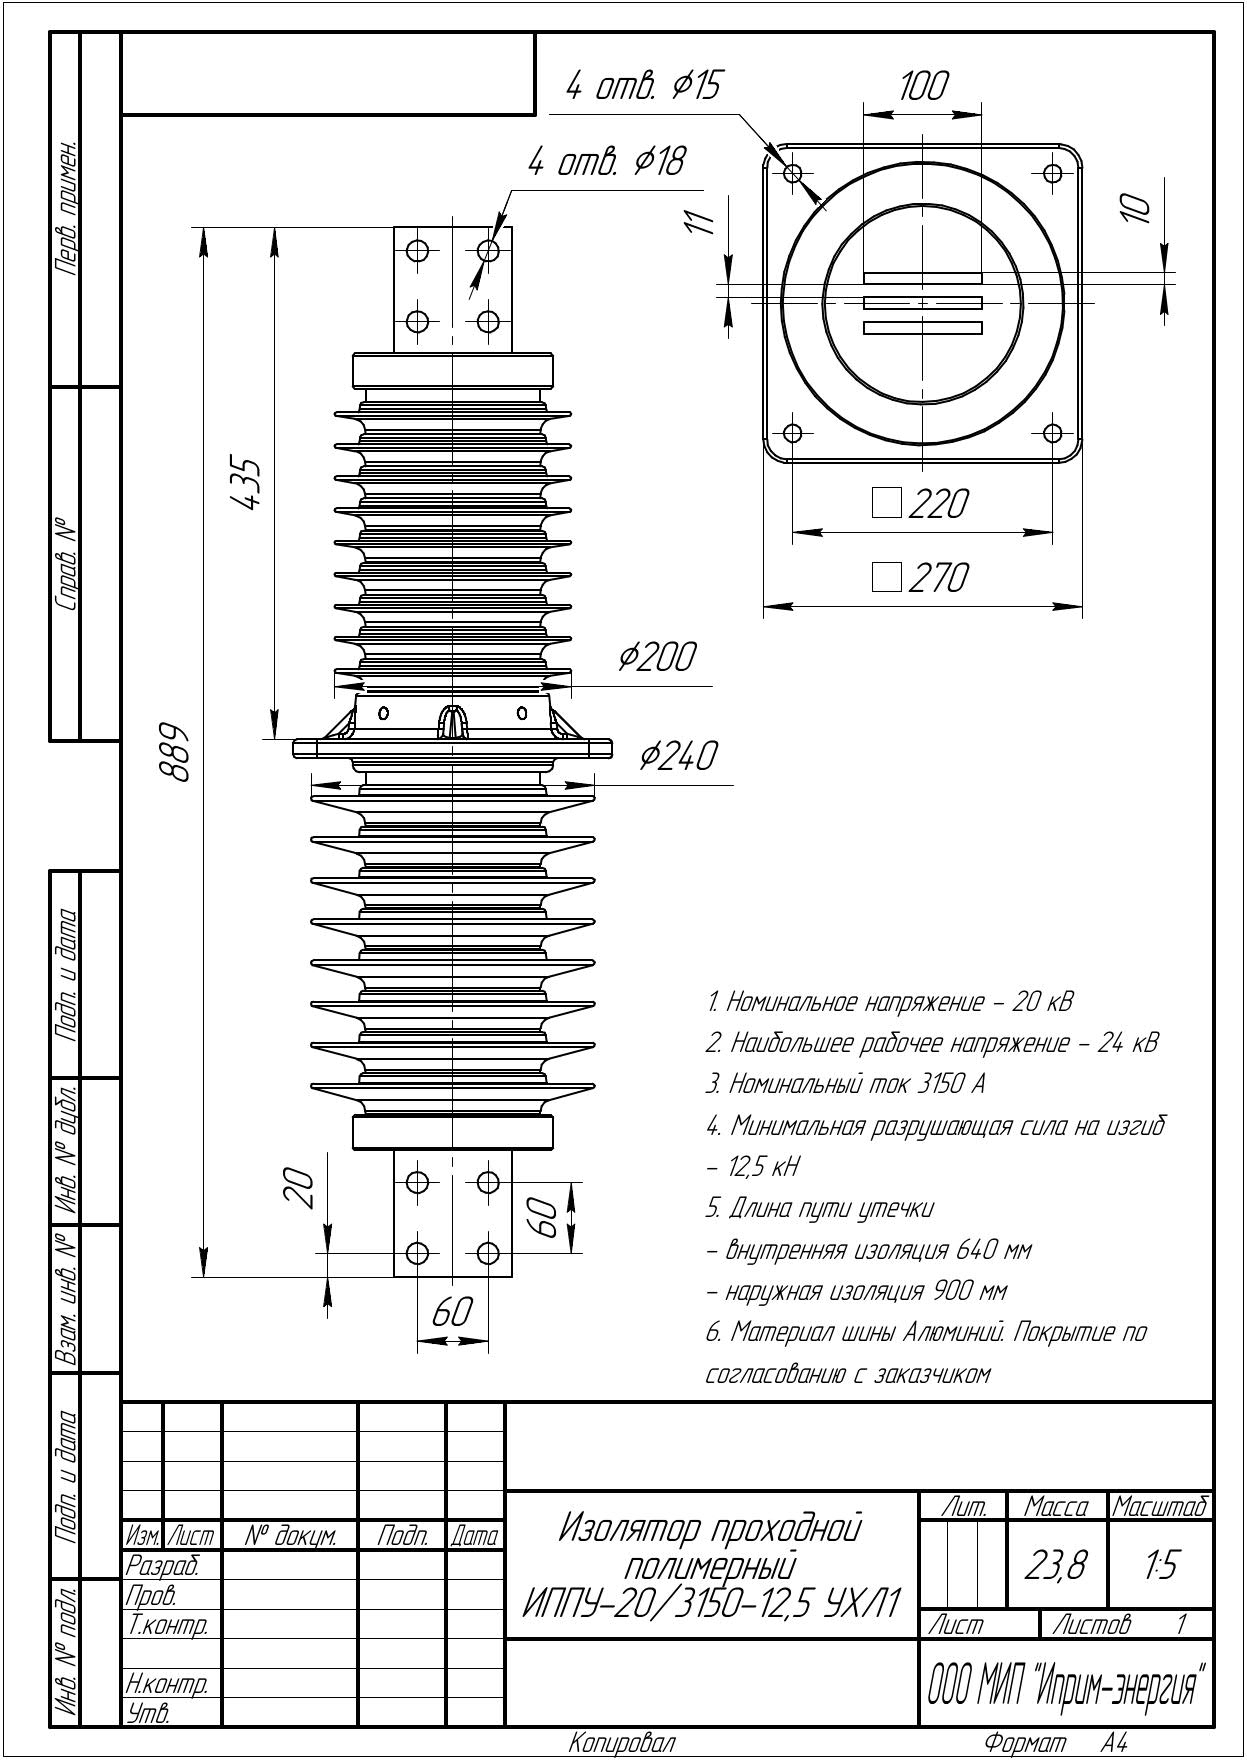 Изолятор проходной полимерный ИППУ-20/3150-12,5 УХЛ1 (новое поколение) чертеж